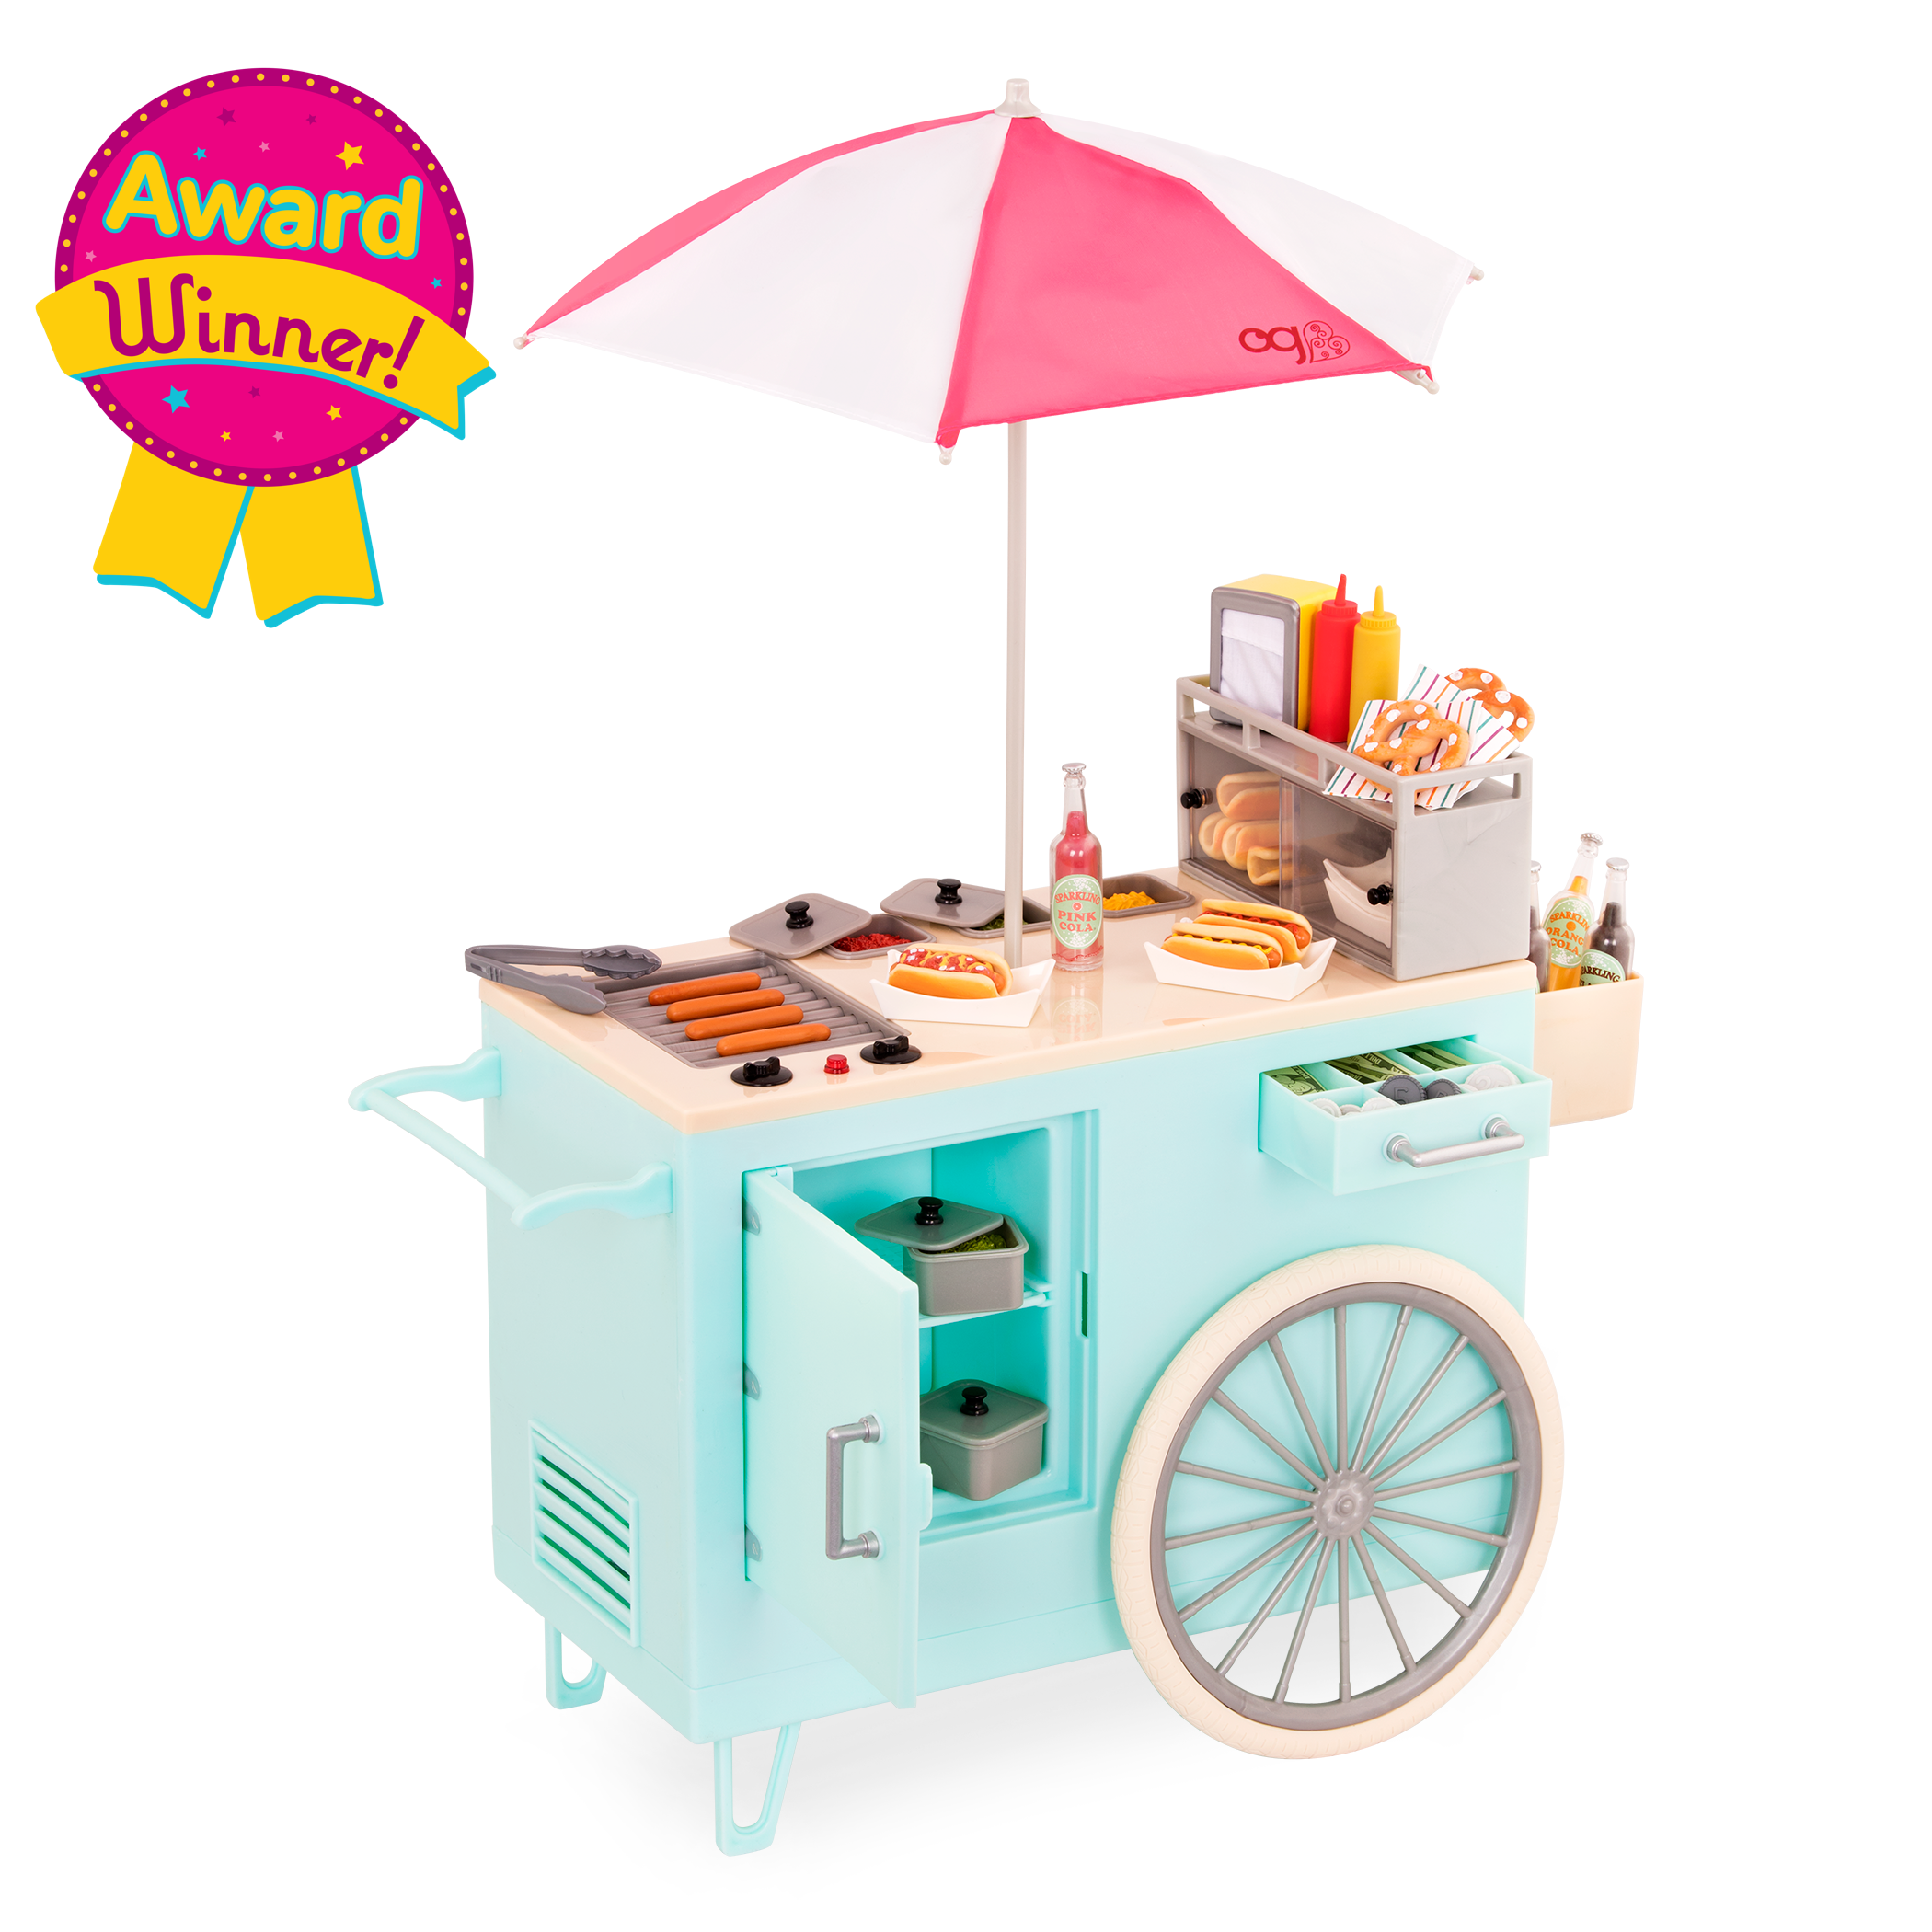 Hot dog cart playset